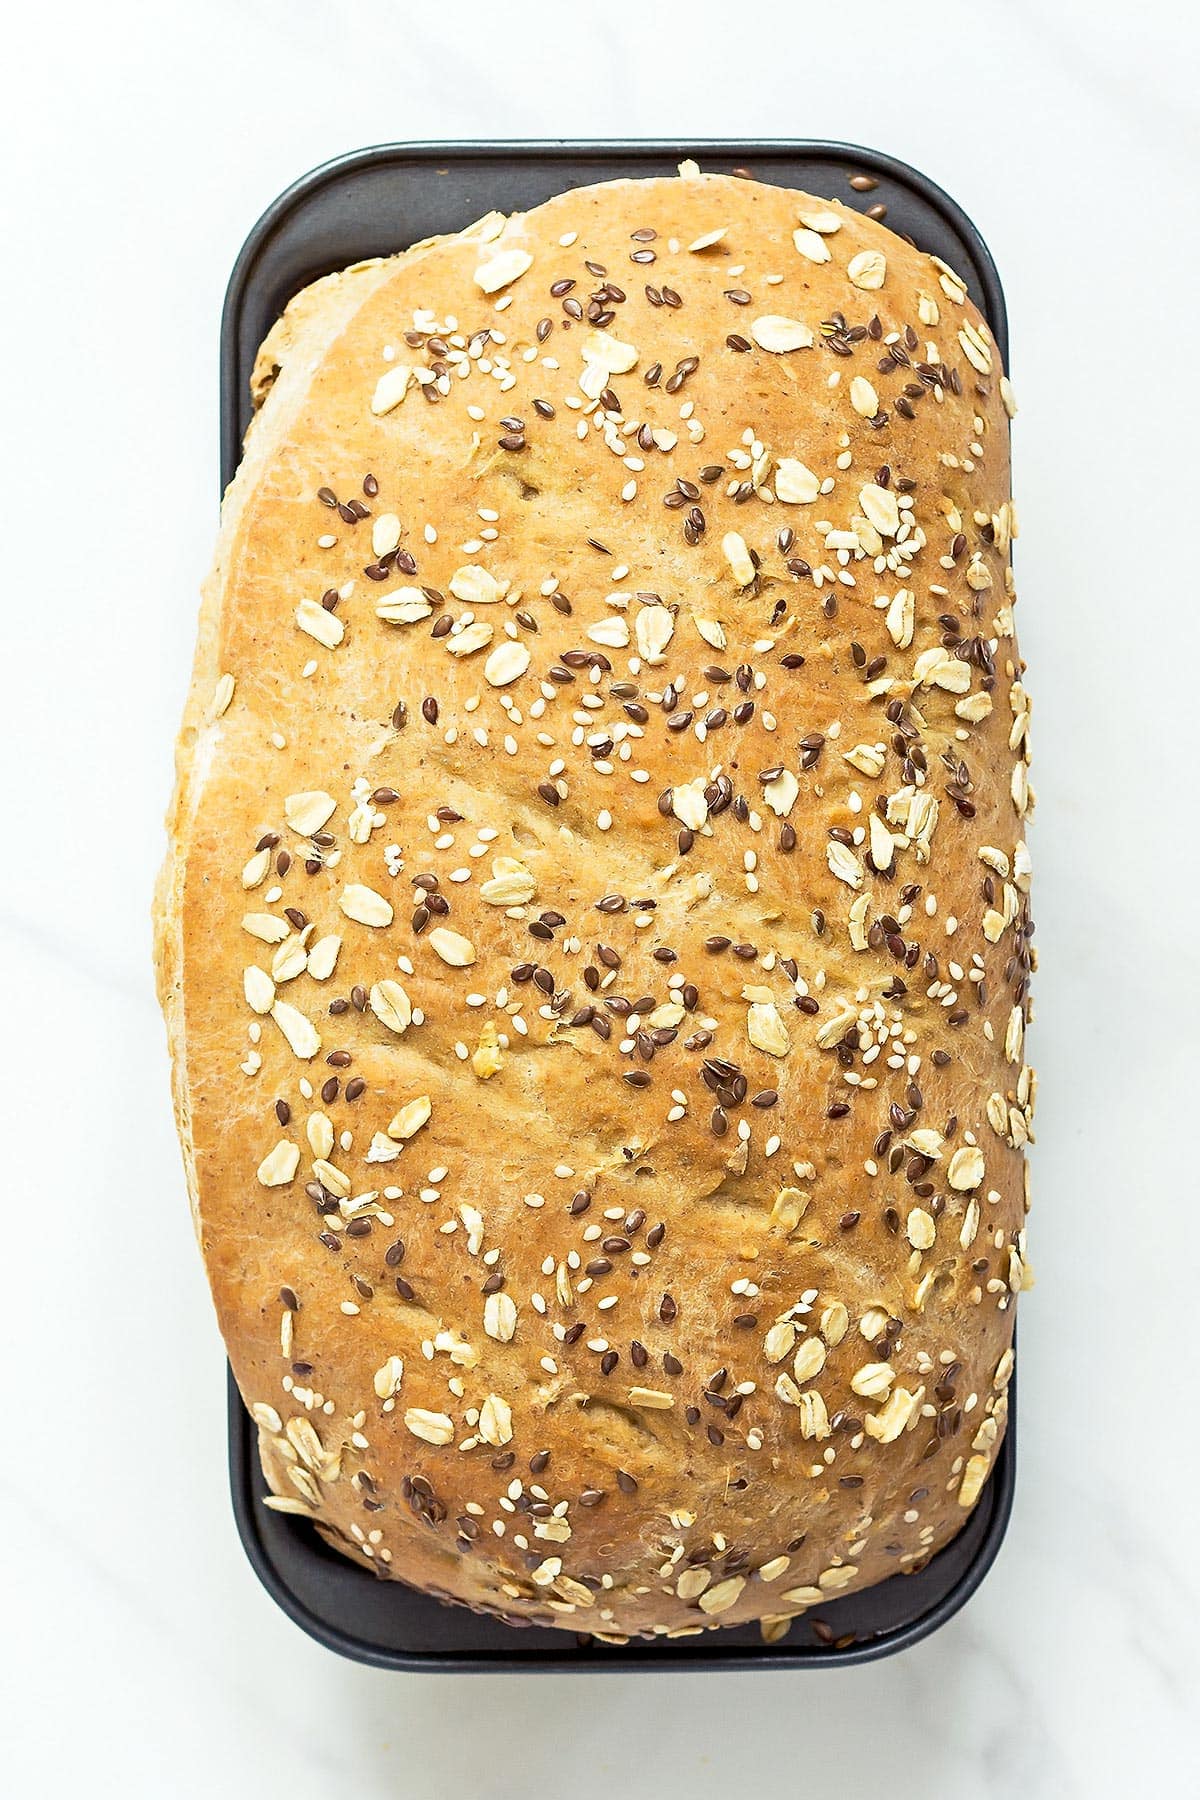 Baked Whole Wheat Sandwich Bread